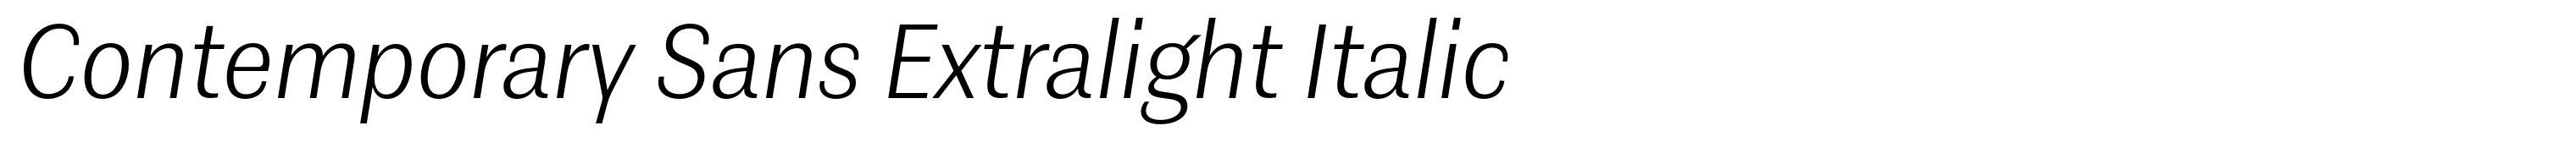 Contemporary Sans Extralight Italic